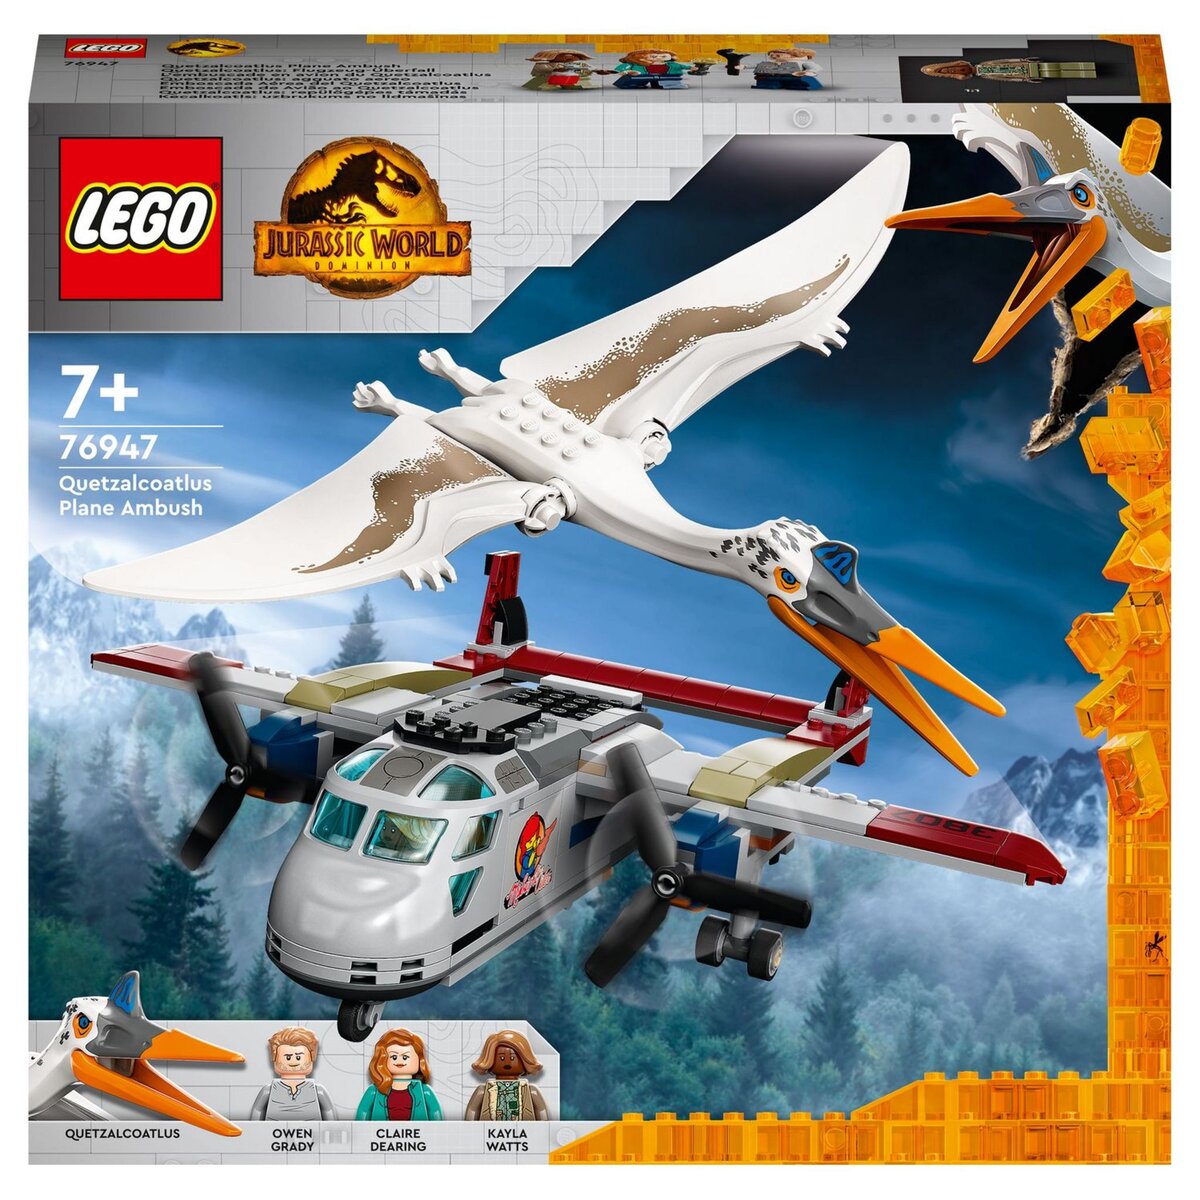 LEGO Jurassic World 76947 L’Embuscade en Avion du Quetzalcoatlus,  Dinosaure Jouet et Avion pas cher 